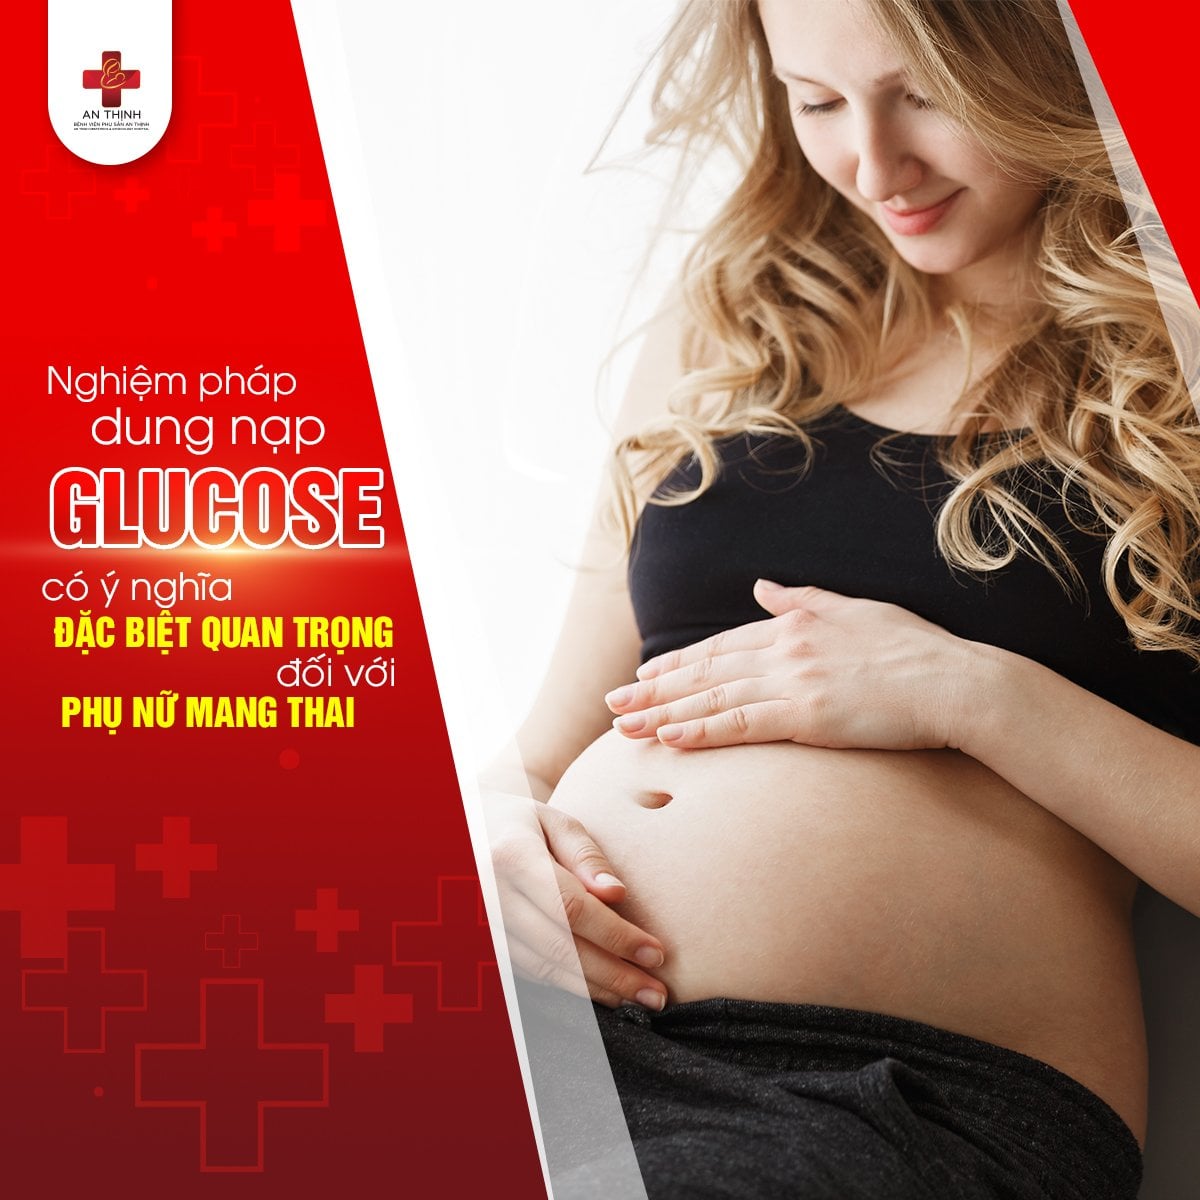 Nghiệm pháp dung nạp glucose có ý nghĩa quan trọng với phụ nữ mang thai, tránh tình trạng mẹ bị đái tháo đường, sinh con to, sức khỏe yếu.